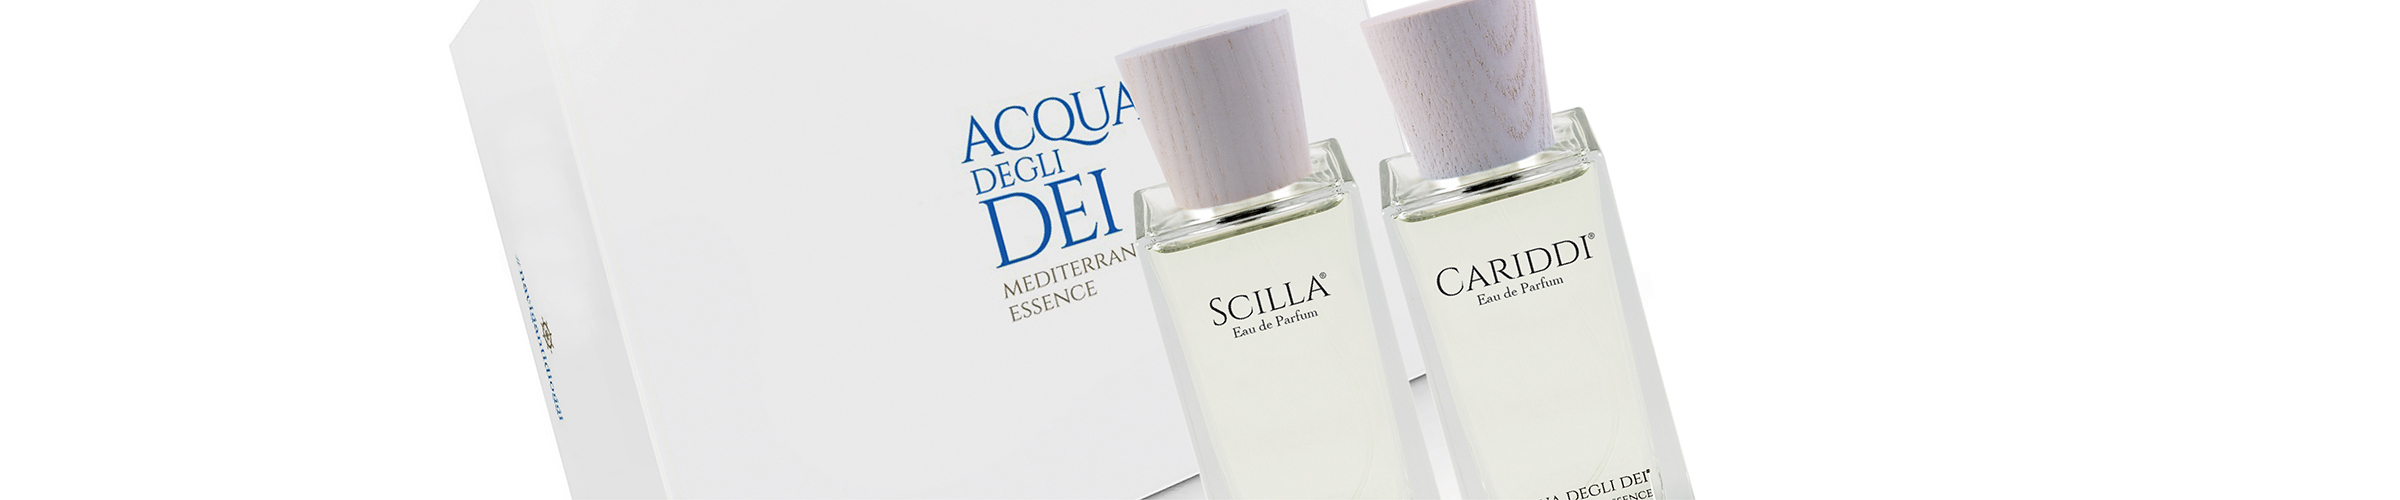 I due eau de parfum Scilla e Cariddi nel formato 100 ml, custoditi nell’elegante cofanetto da regalo.